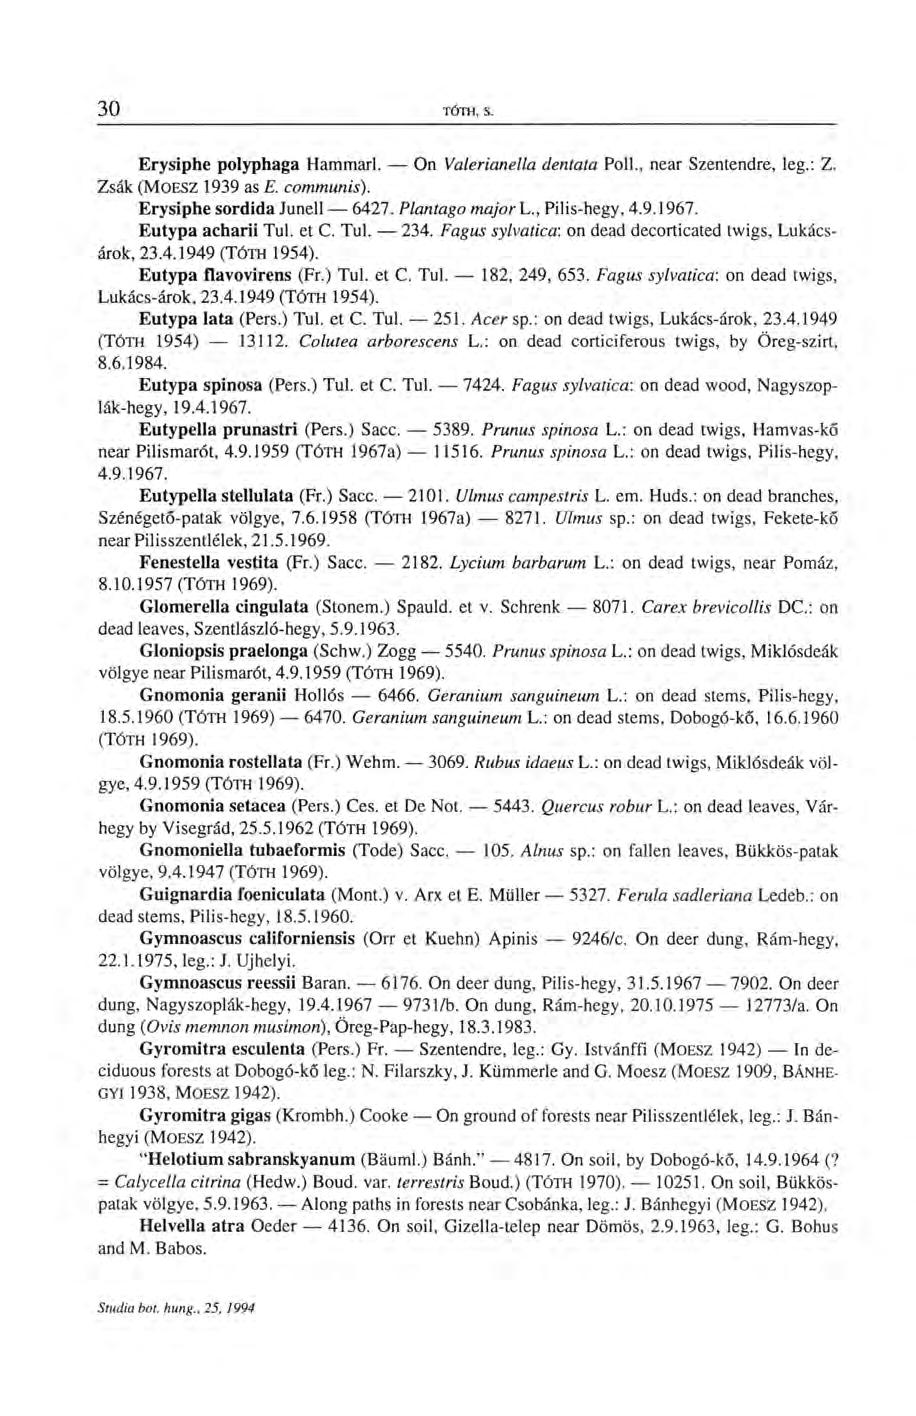 Erysiphe polyphaga Hammarl. On Valerianella dentata Poll., near Szentendre, leg.: Z. Zsák (MOESZ 1939 as E. communis). Erysiphe sordida Junell 6427. Plantago major L., Pilis-hegy, 4.9.1967.